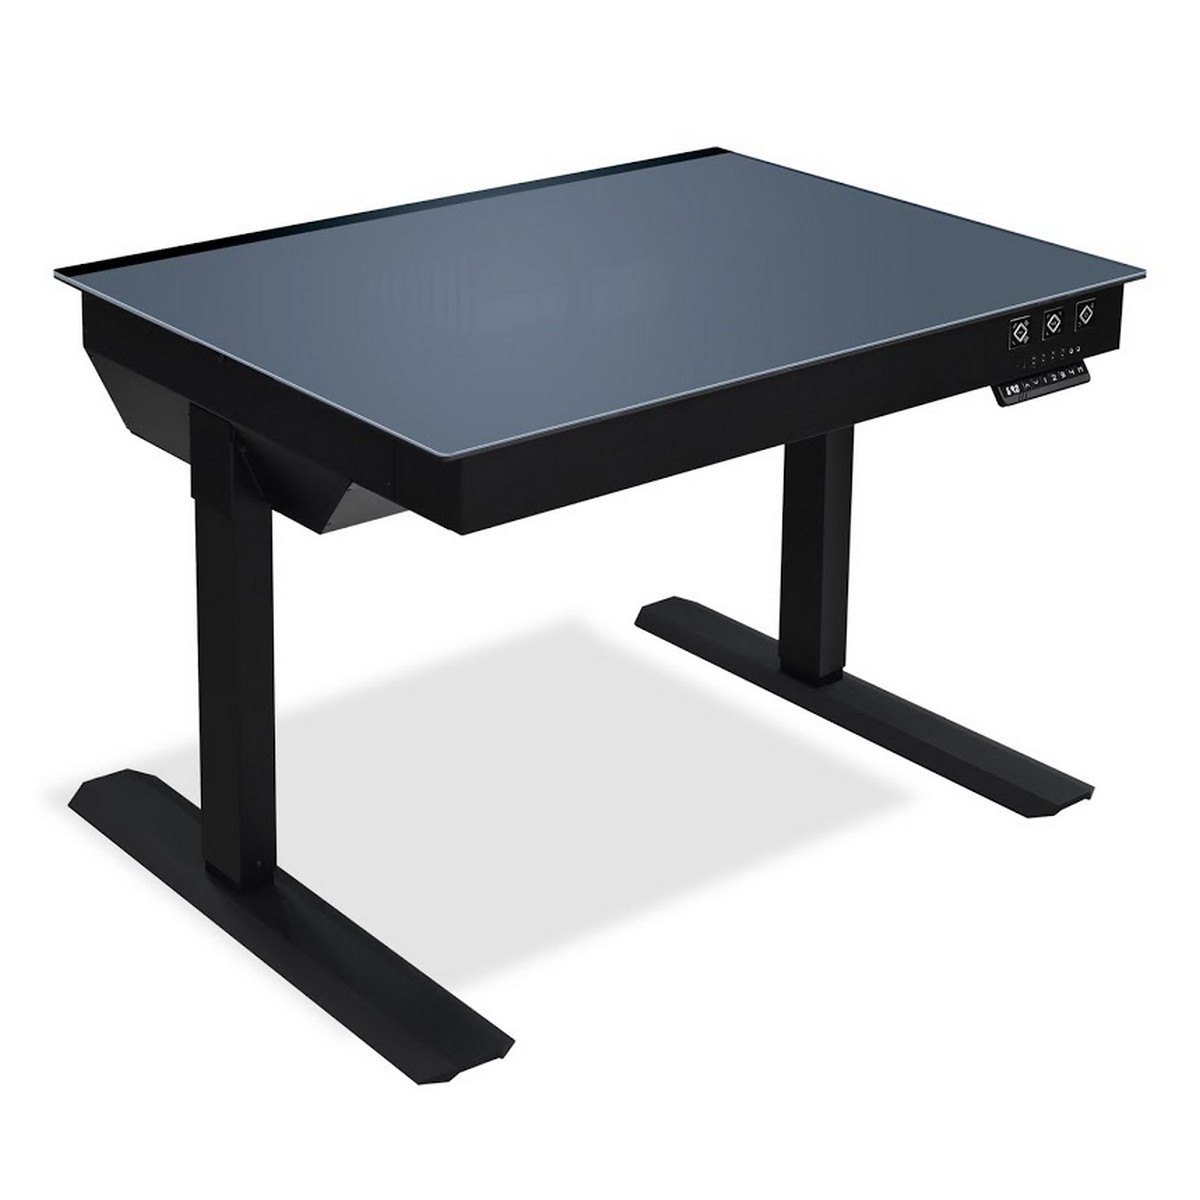 Lian Li - Lian Li DK-04F Electrical Height Adjustable Desk Case - Black